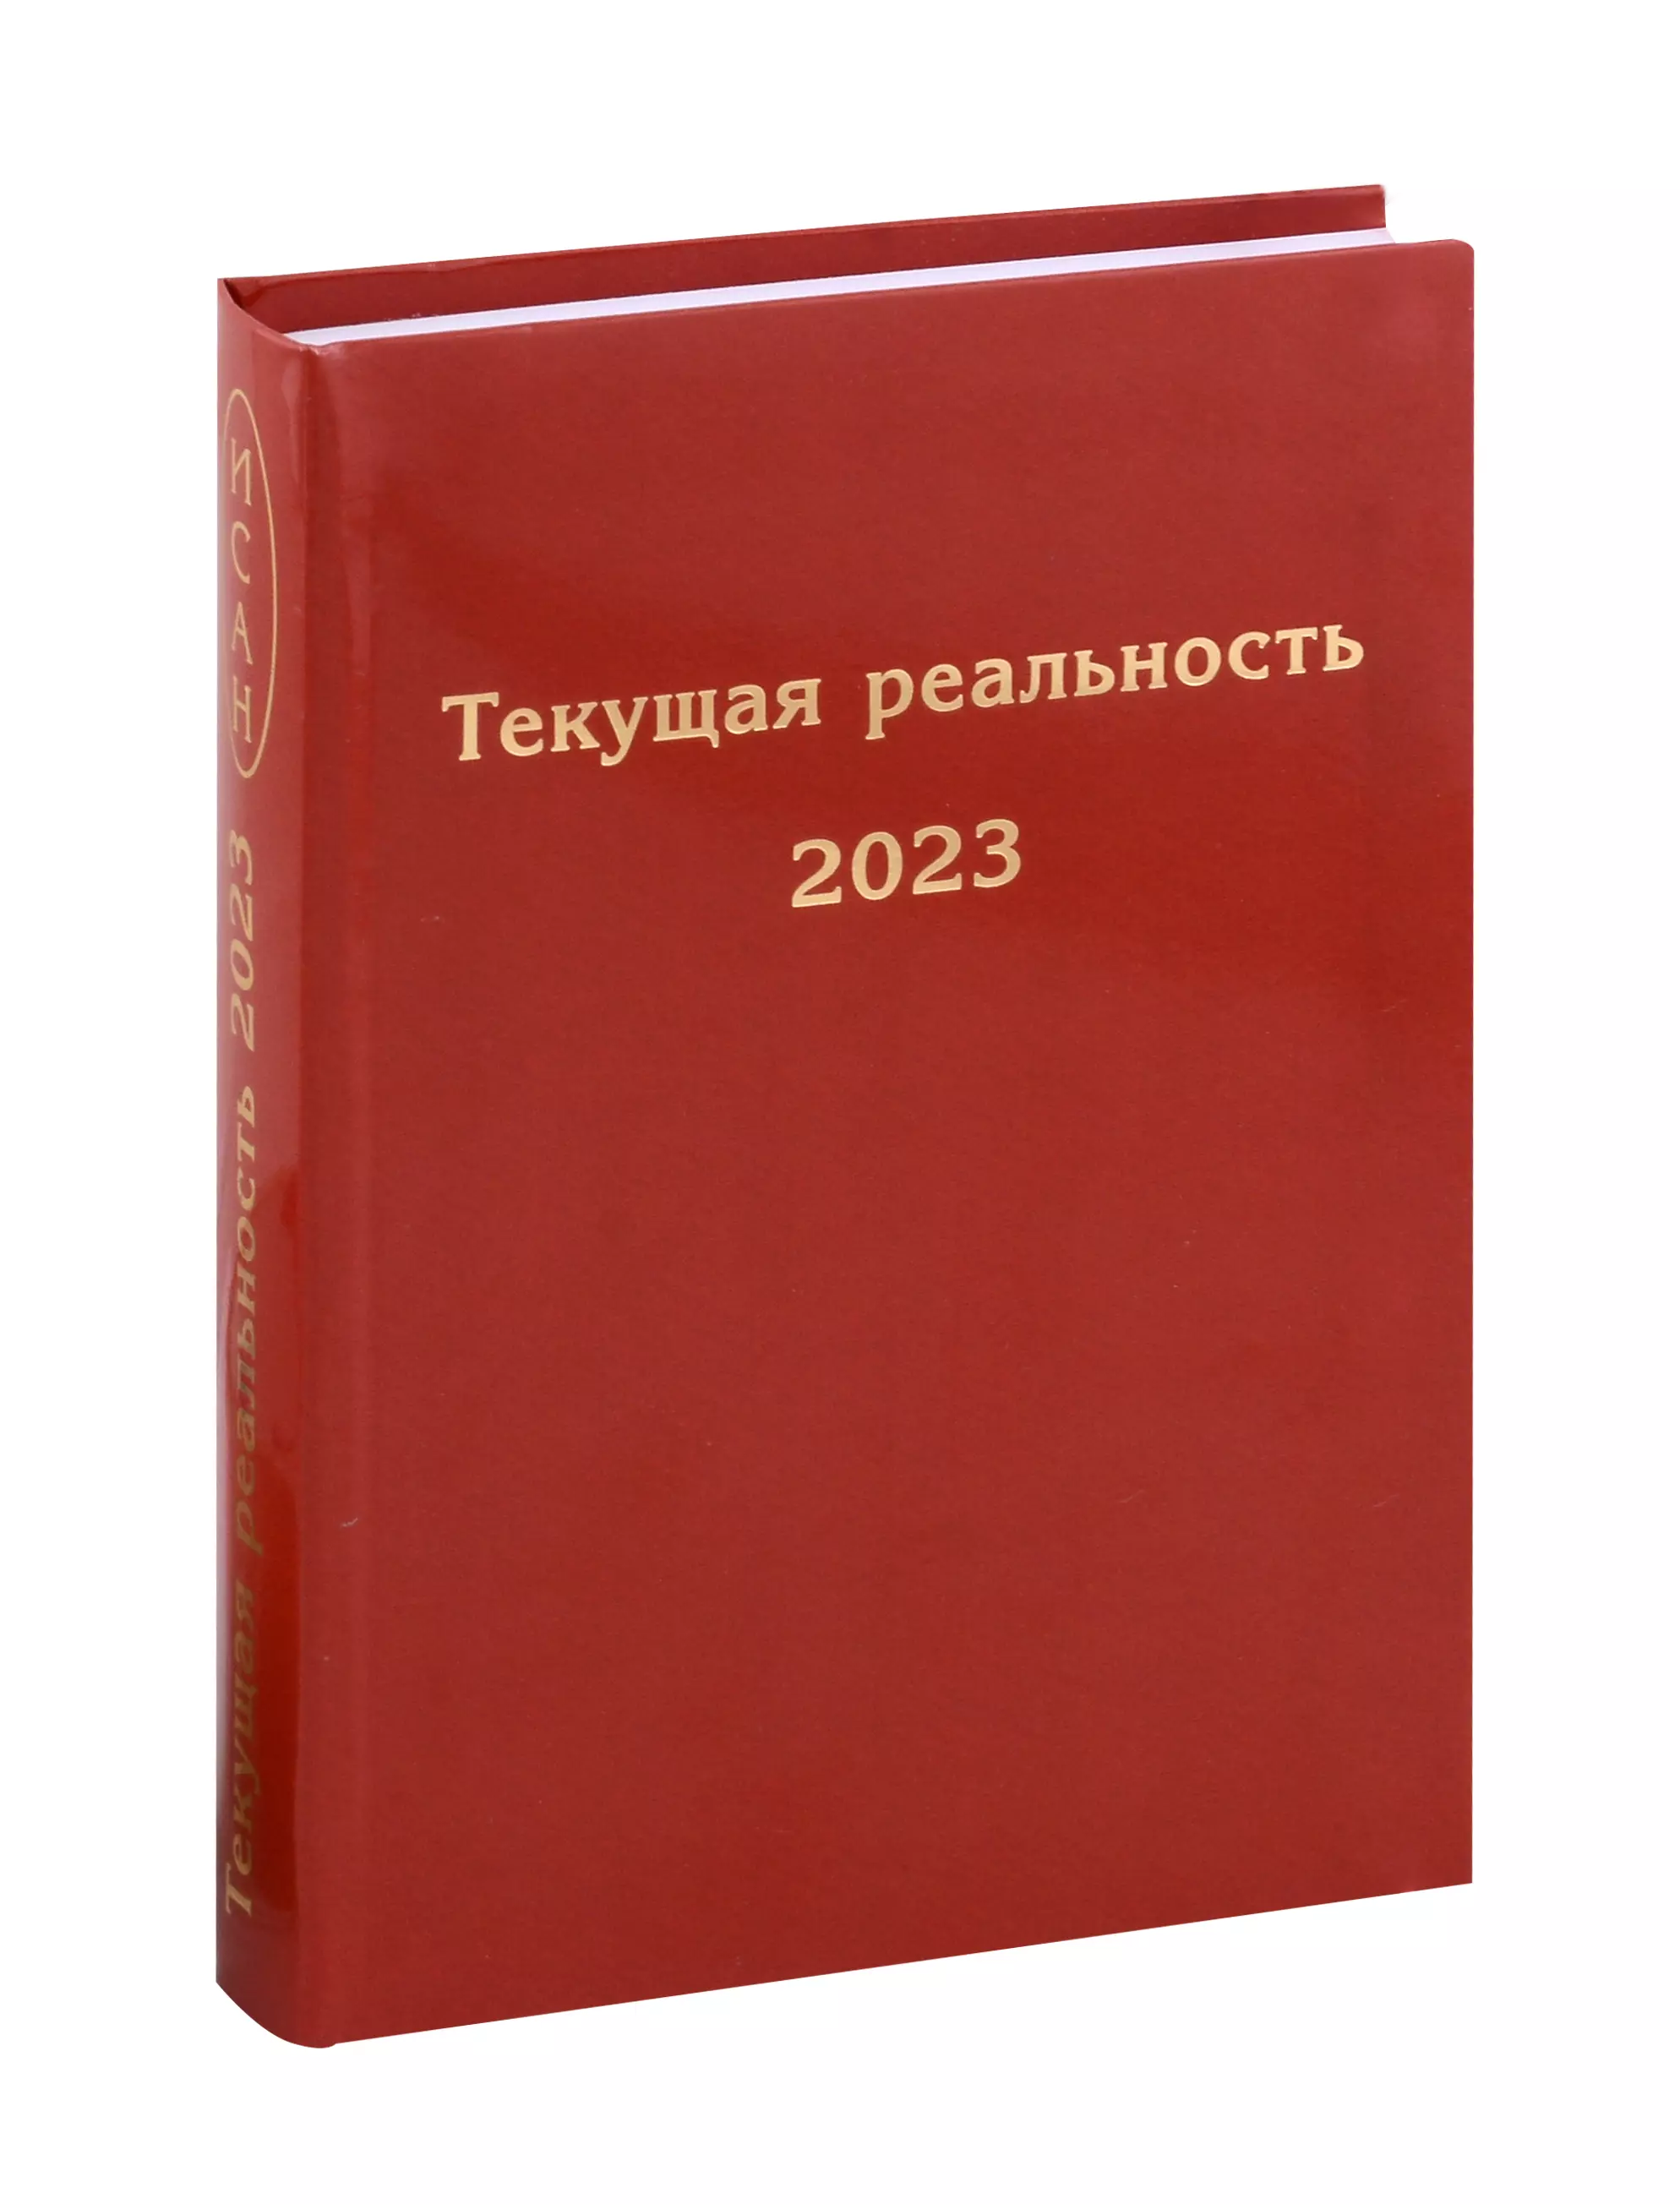 текущая реальность 2022 избранная хронология Пономарева Елена Георгиевна Текущая реальность 2023. Избранная хронология